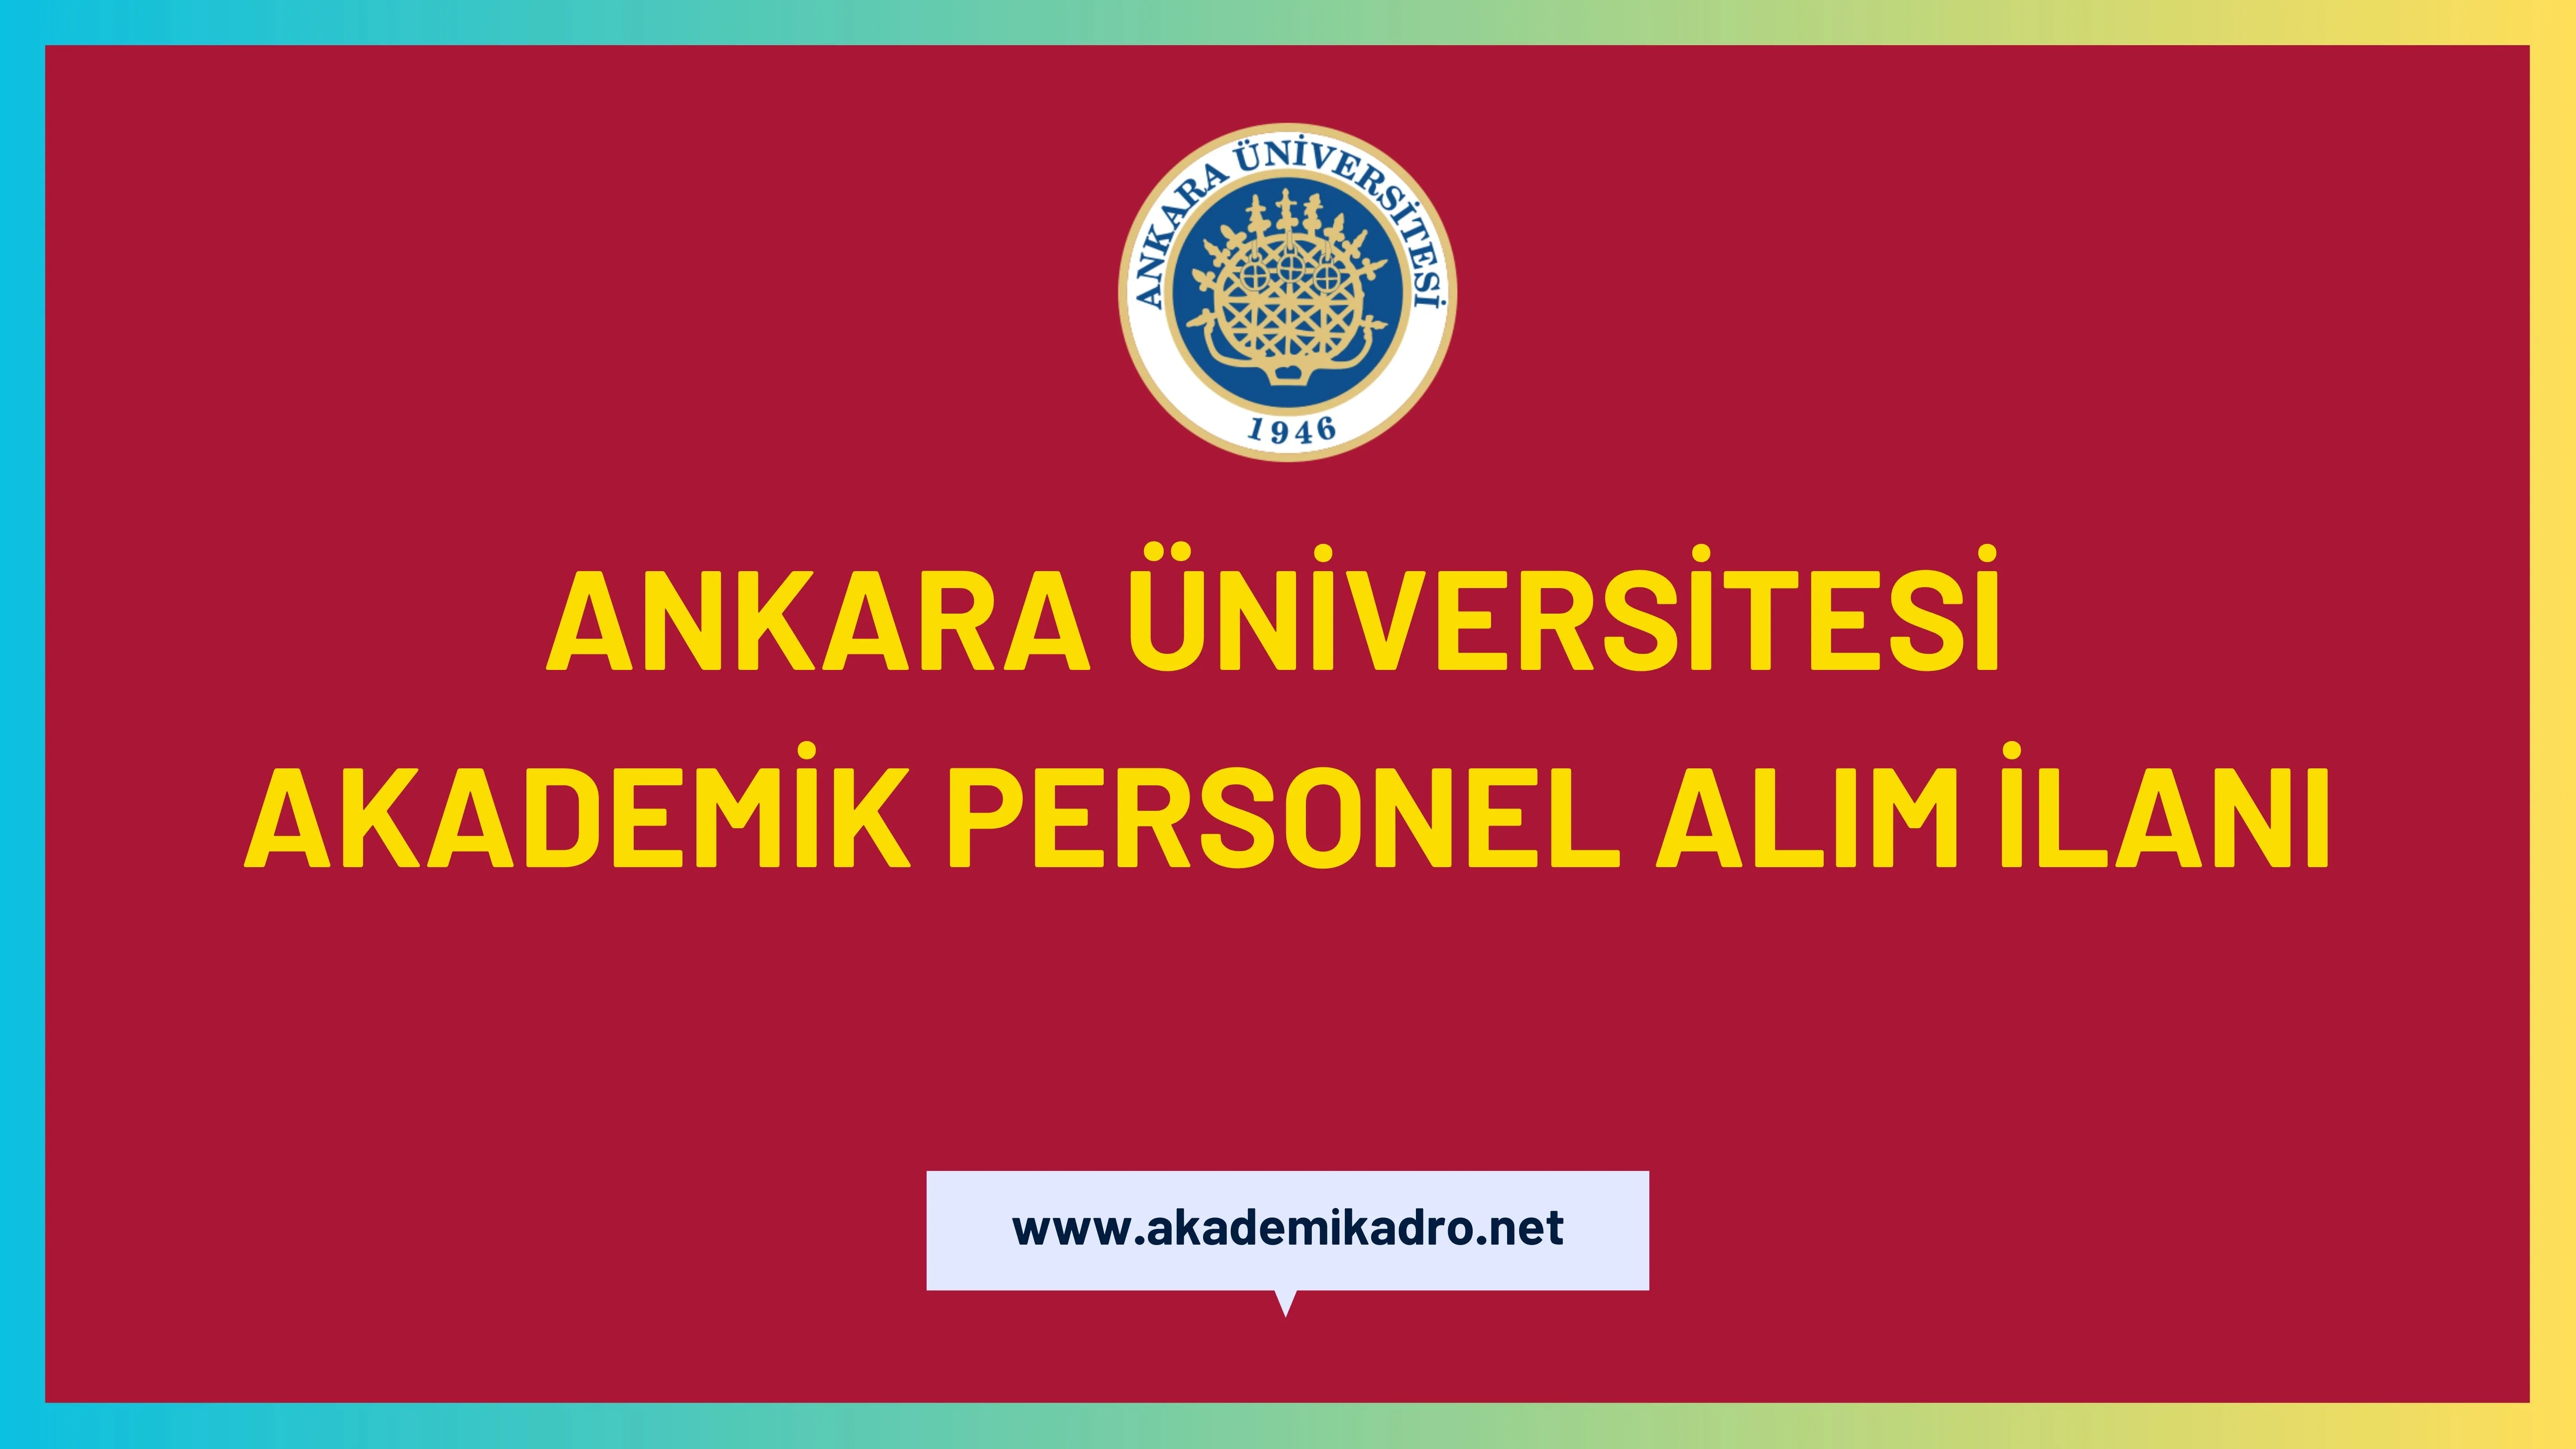 Ankara Üniversitesi birçok alandan 63 akademik personel alacak.